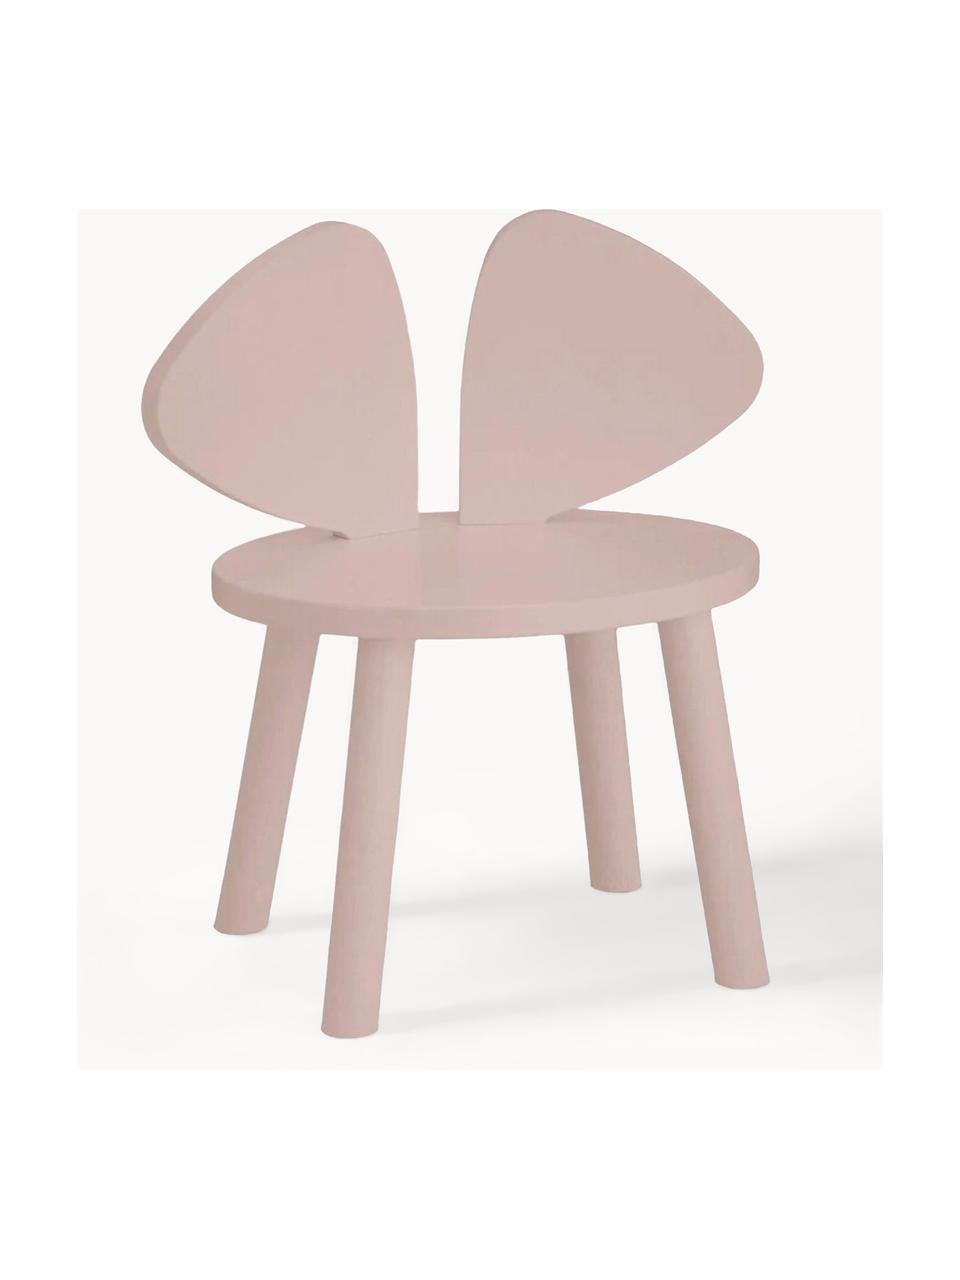 Krzesełko dla dzieci z drewna Mouse, Fornir brzozowy lakierowany

Ten produkt jest wykonany z drewna pochodzącego ze zrównoważonych upraw, które posiada certyfikat FSC®., Blady różowy, S 43 x G 28 cm